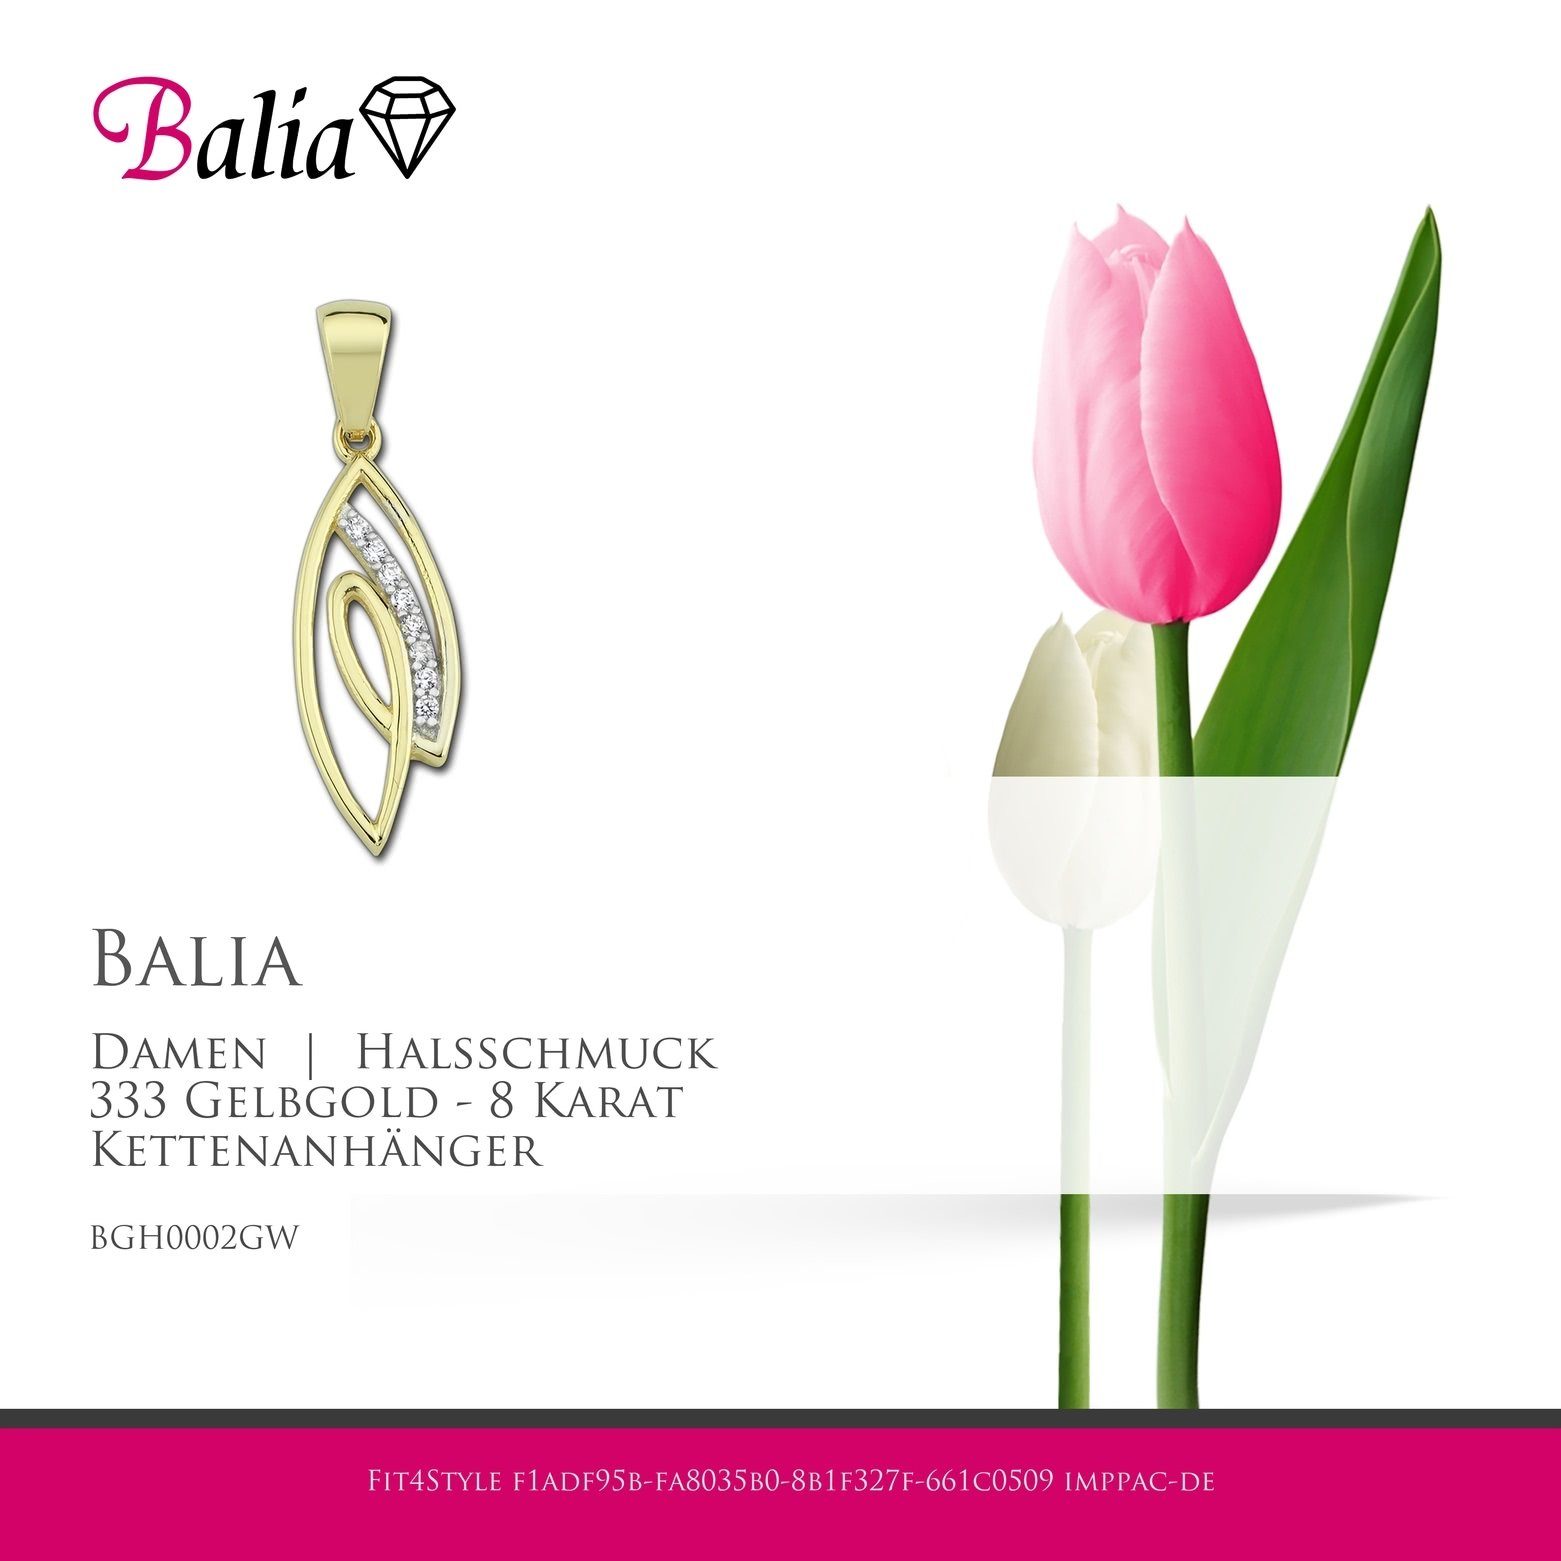 8K Damen Gold, Balia Balia - für Kettenanhänger ca. 8 Damen Kettenanhänger 2,6cm, Gelbgold Karat, Kettenanhänger 333 (Blatt) Farbe: